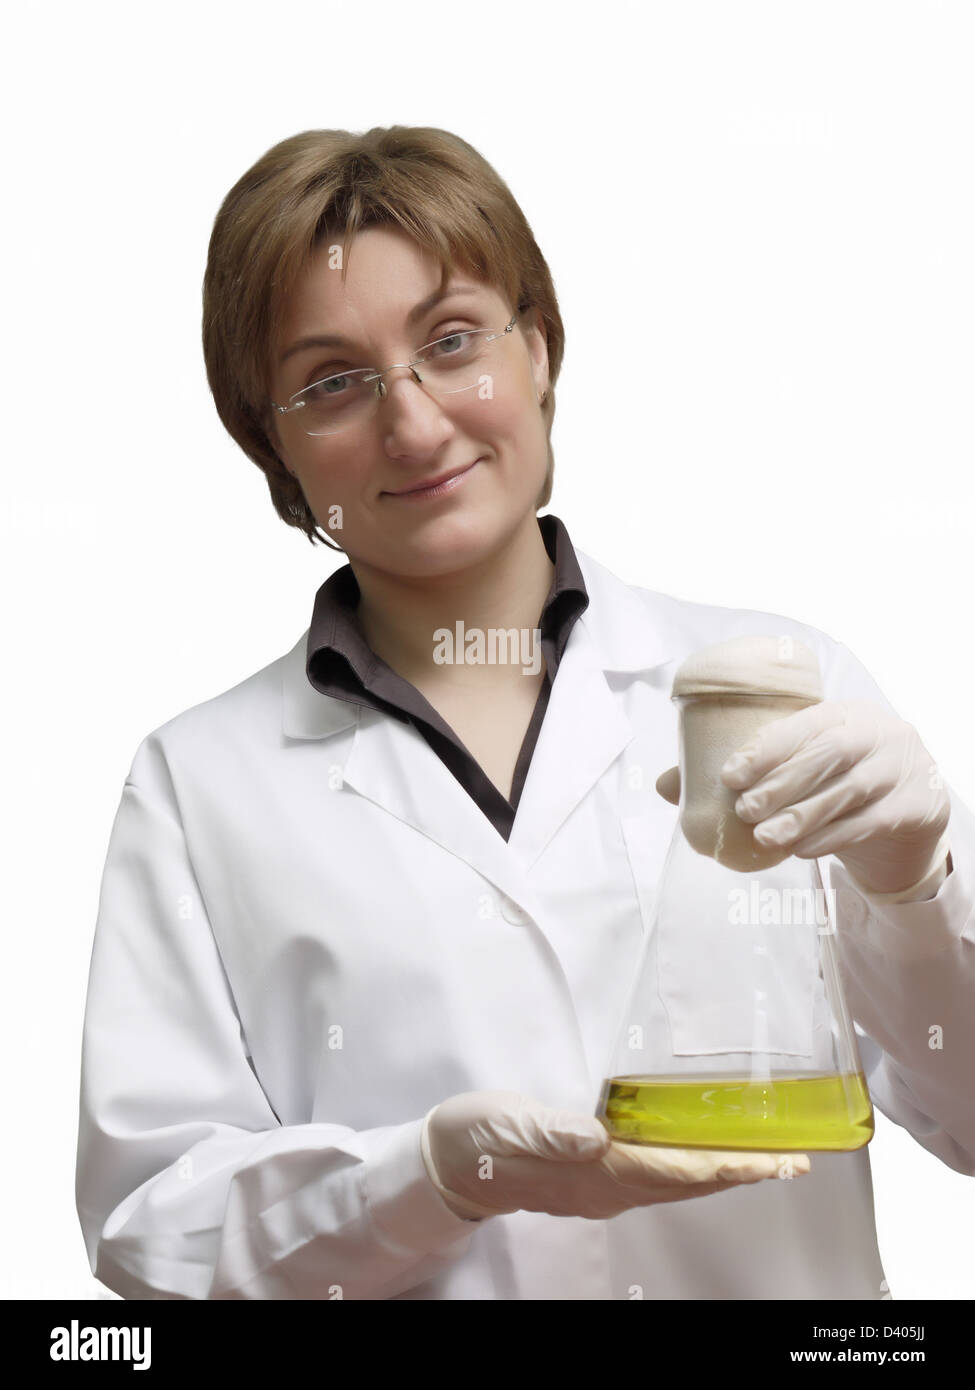 Técnico de laboratorio femenino celebración matraz erlenmeyer con la solución líquida amarilla Foto de stock